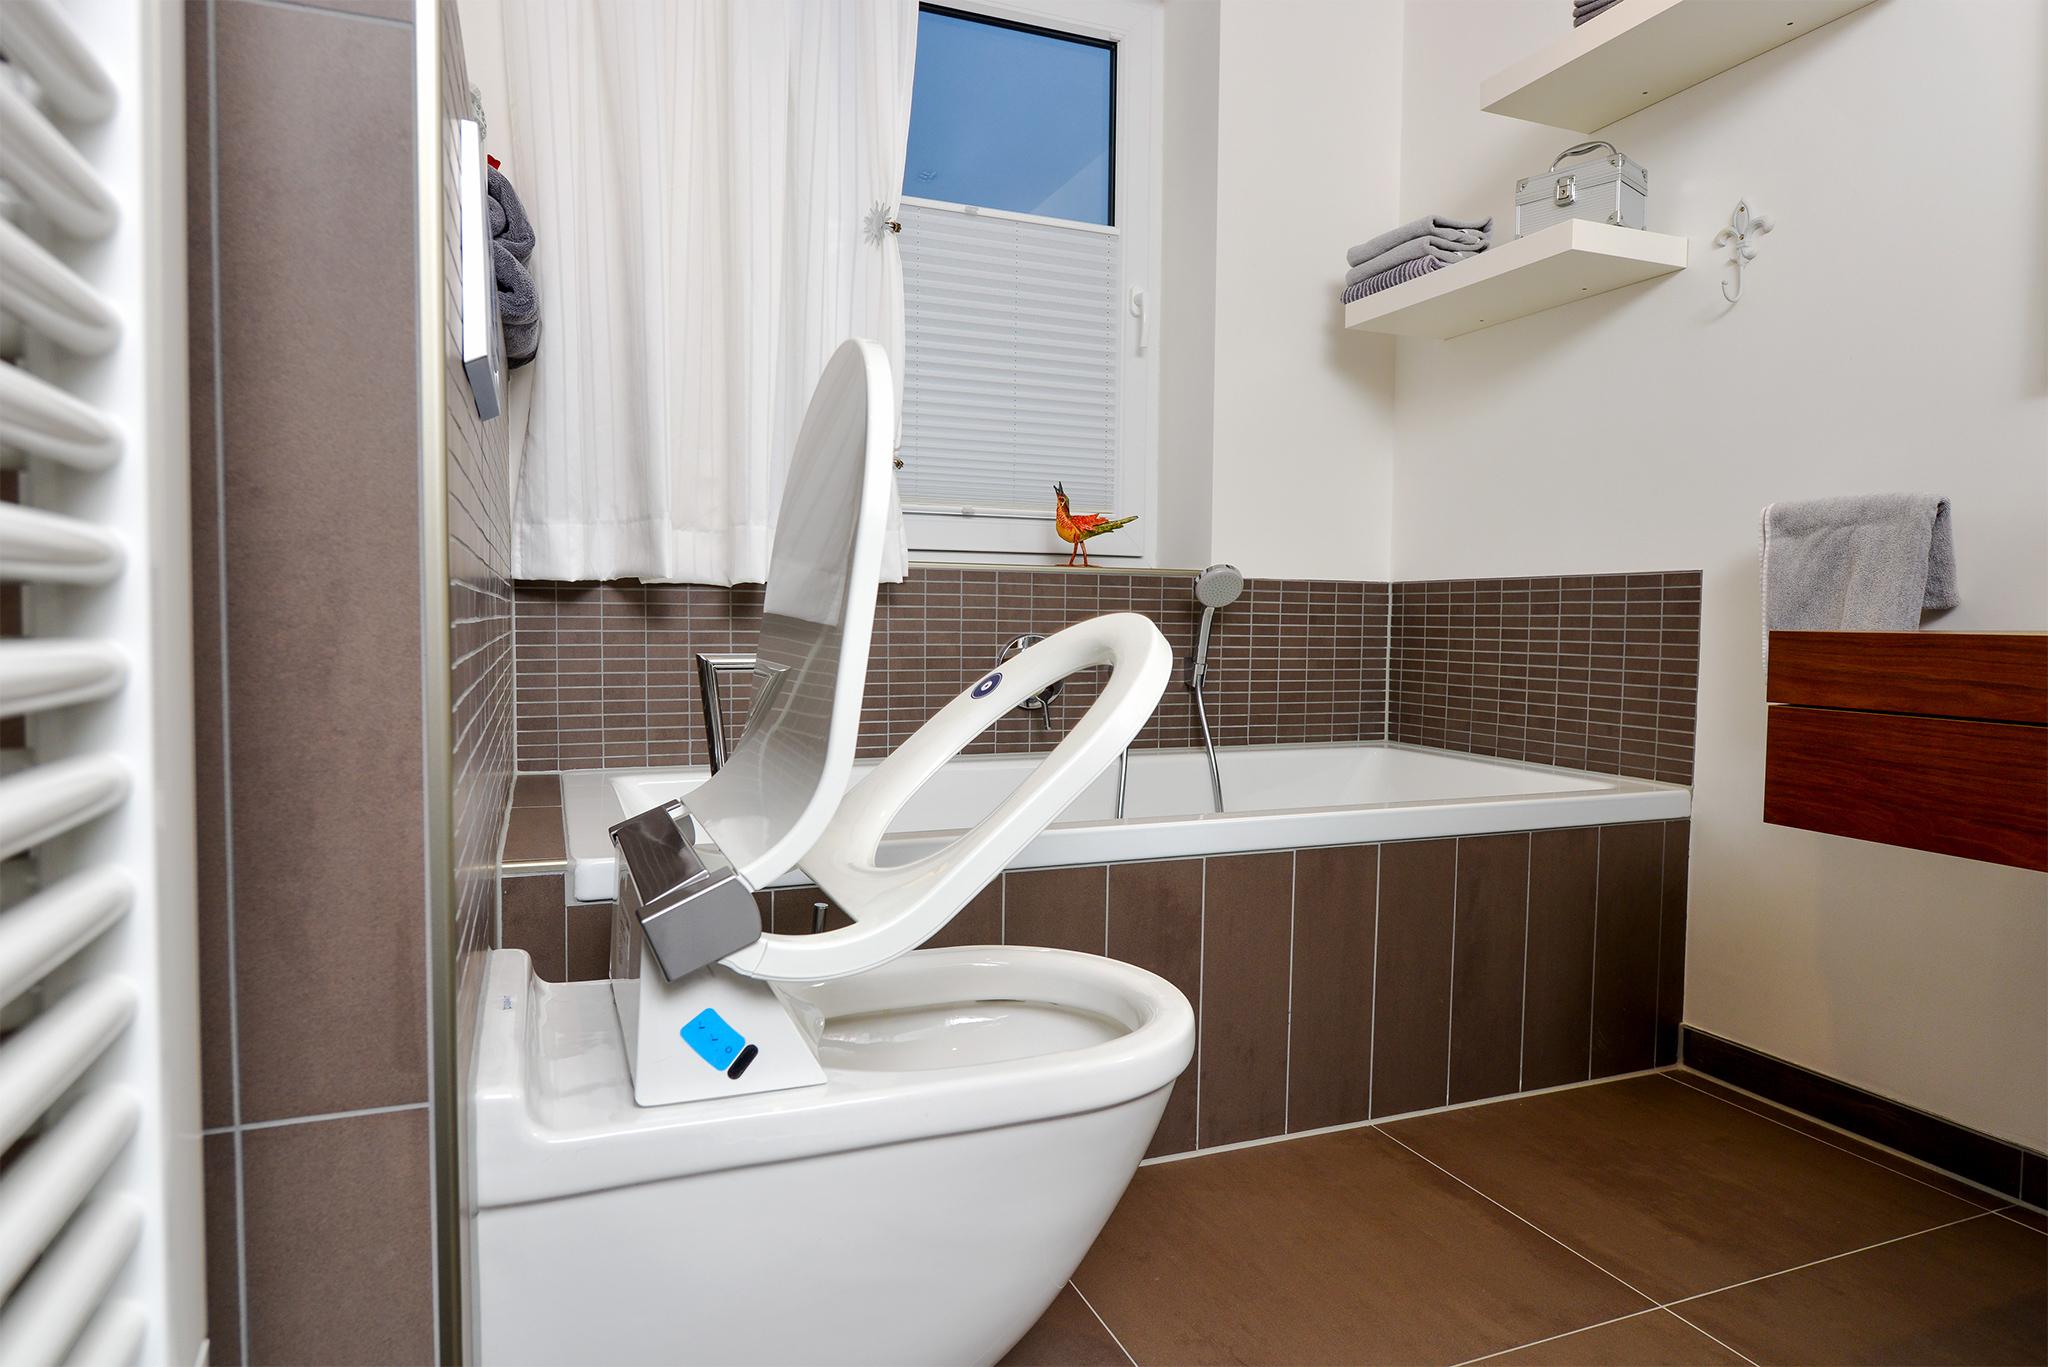 Besonders sanfte Hygiene dank Dusch-WC #badewanne #badezimmer #grauefliesen ©HEIMWOHL GmbH